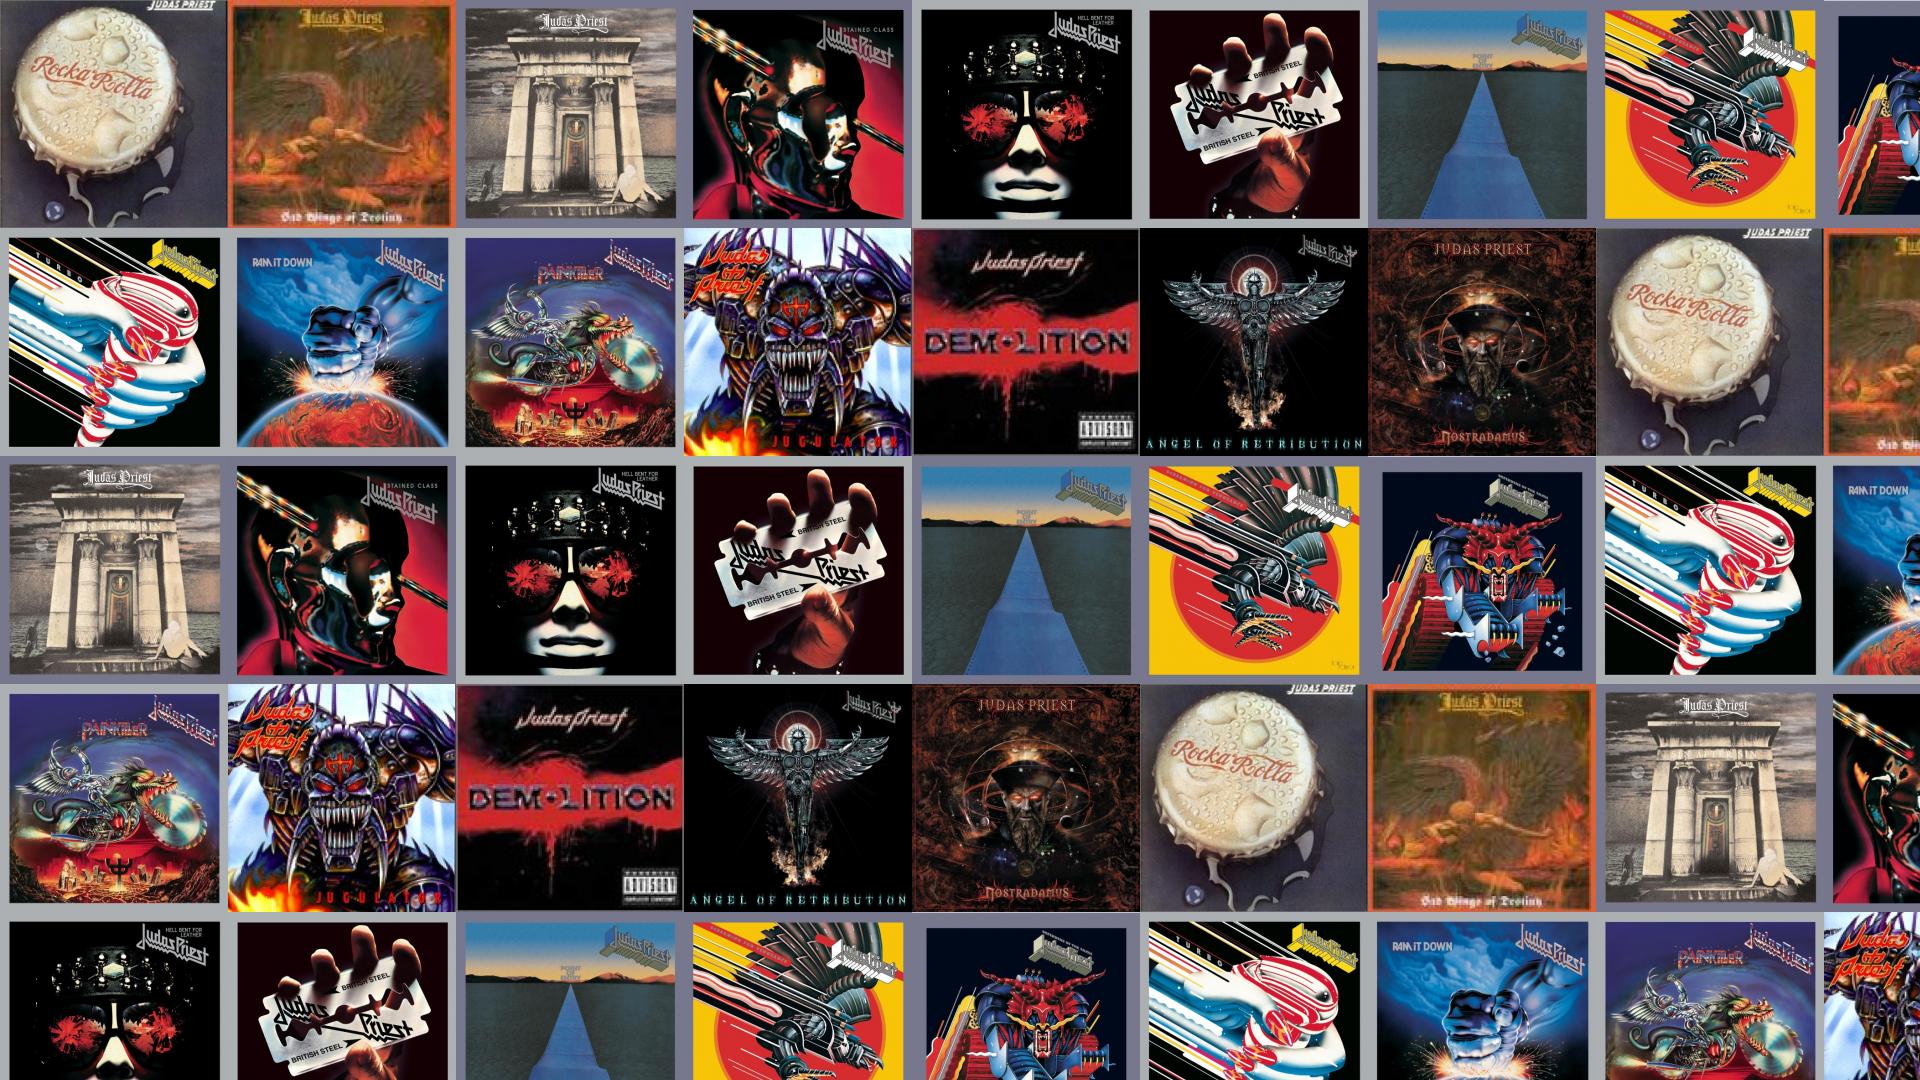 Judas Priest - 1920x1080 Wallpaper 